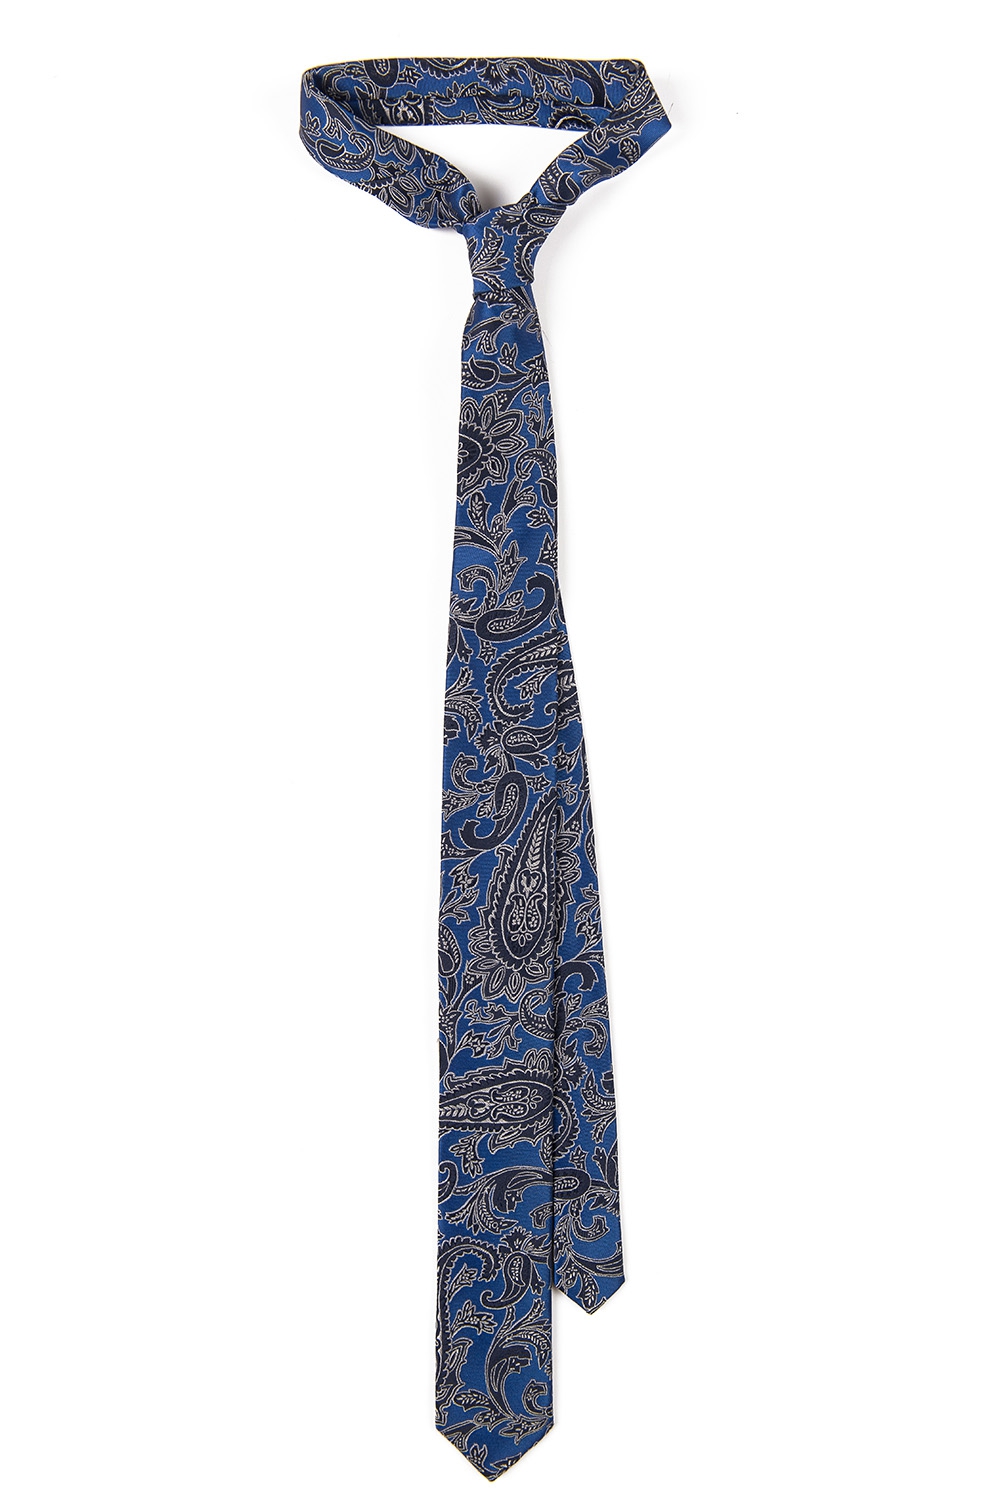 Cravata poliester albastra lira 0